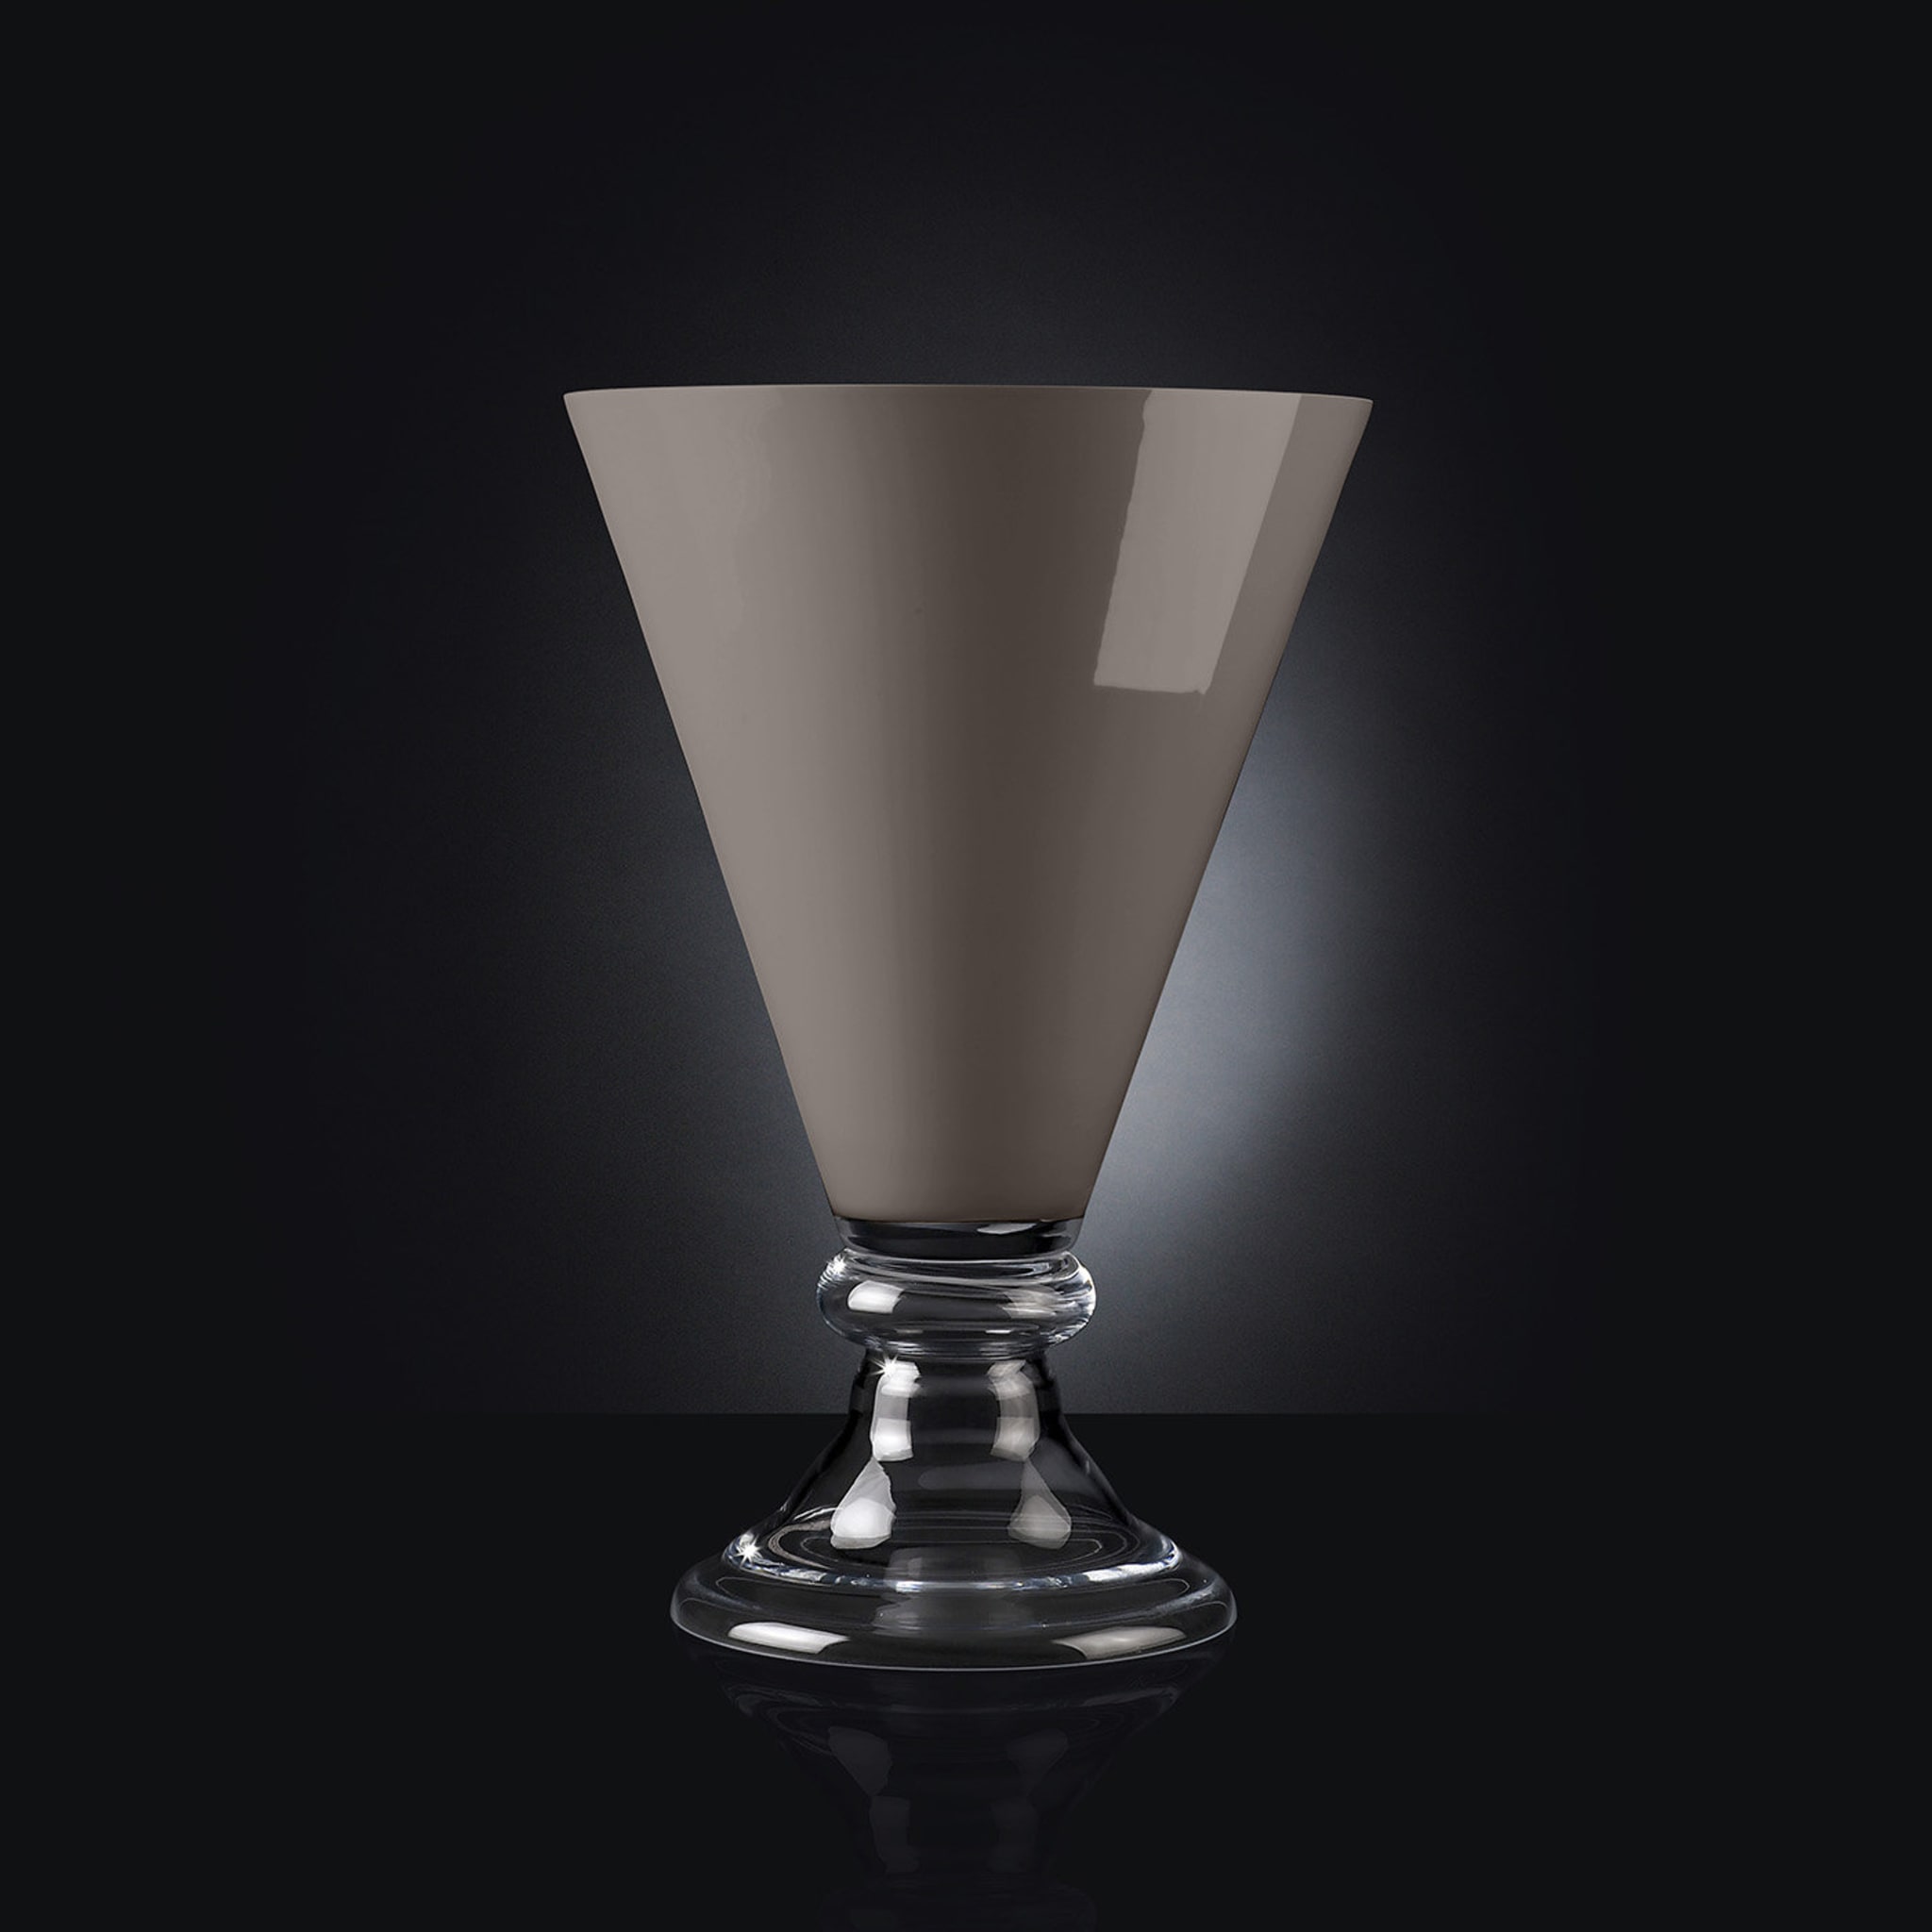 New Romantic Gray Vase - Alternative view 1